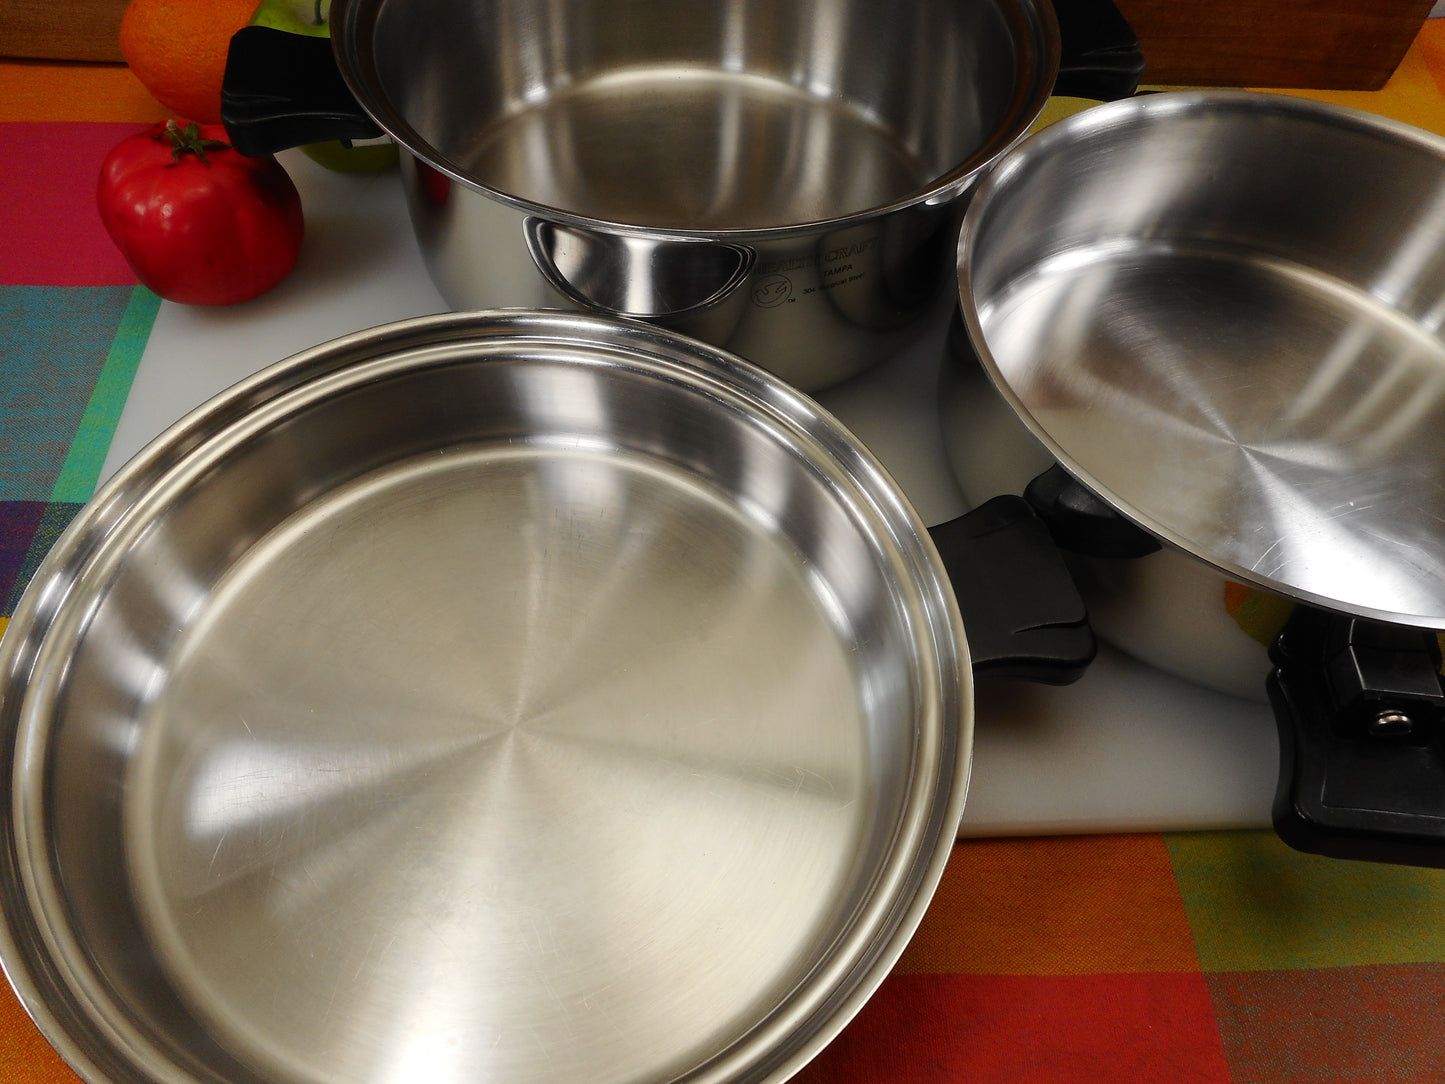 Health Craft Cookware Tampa Fl - 4 Piece Set - 6 Quart Stock Pot & 10" Saute Pan Used